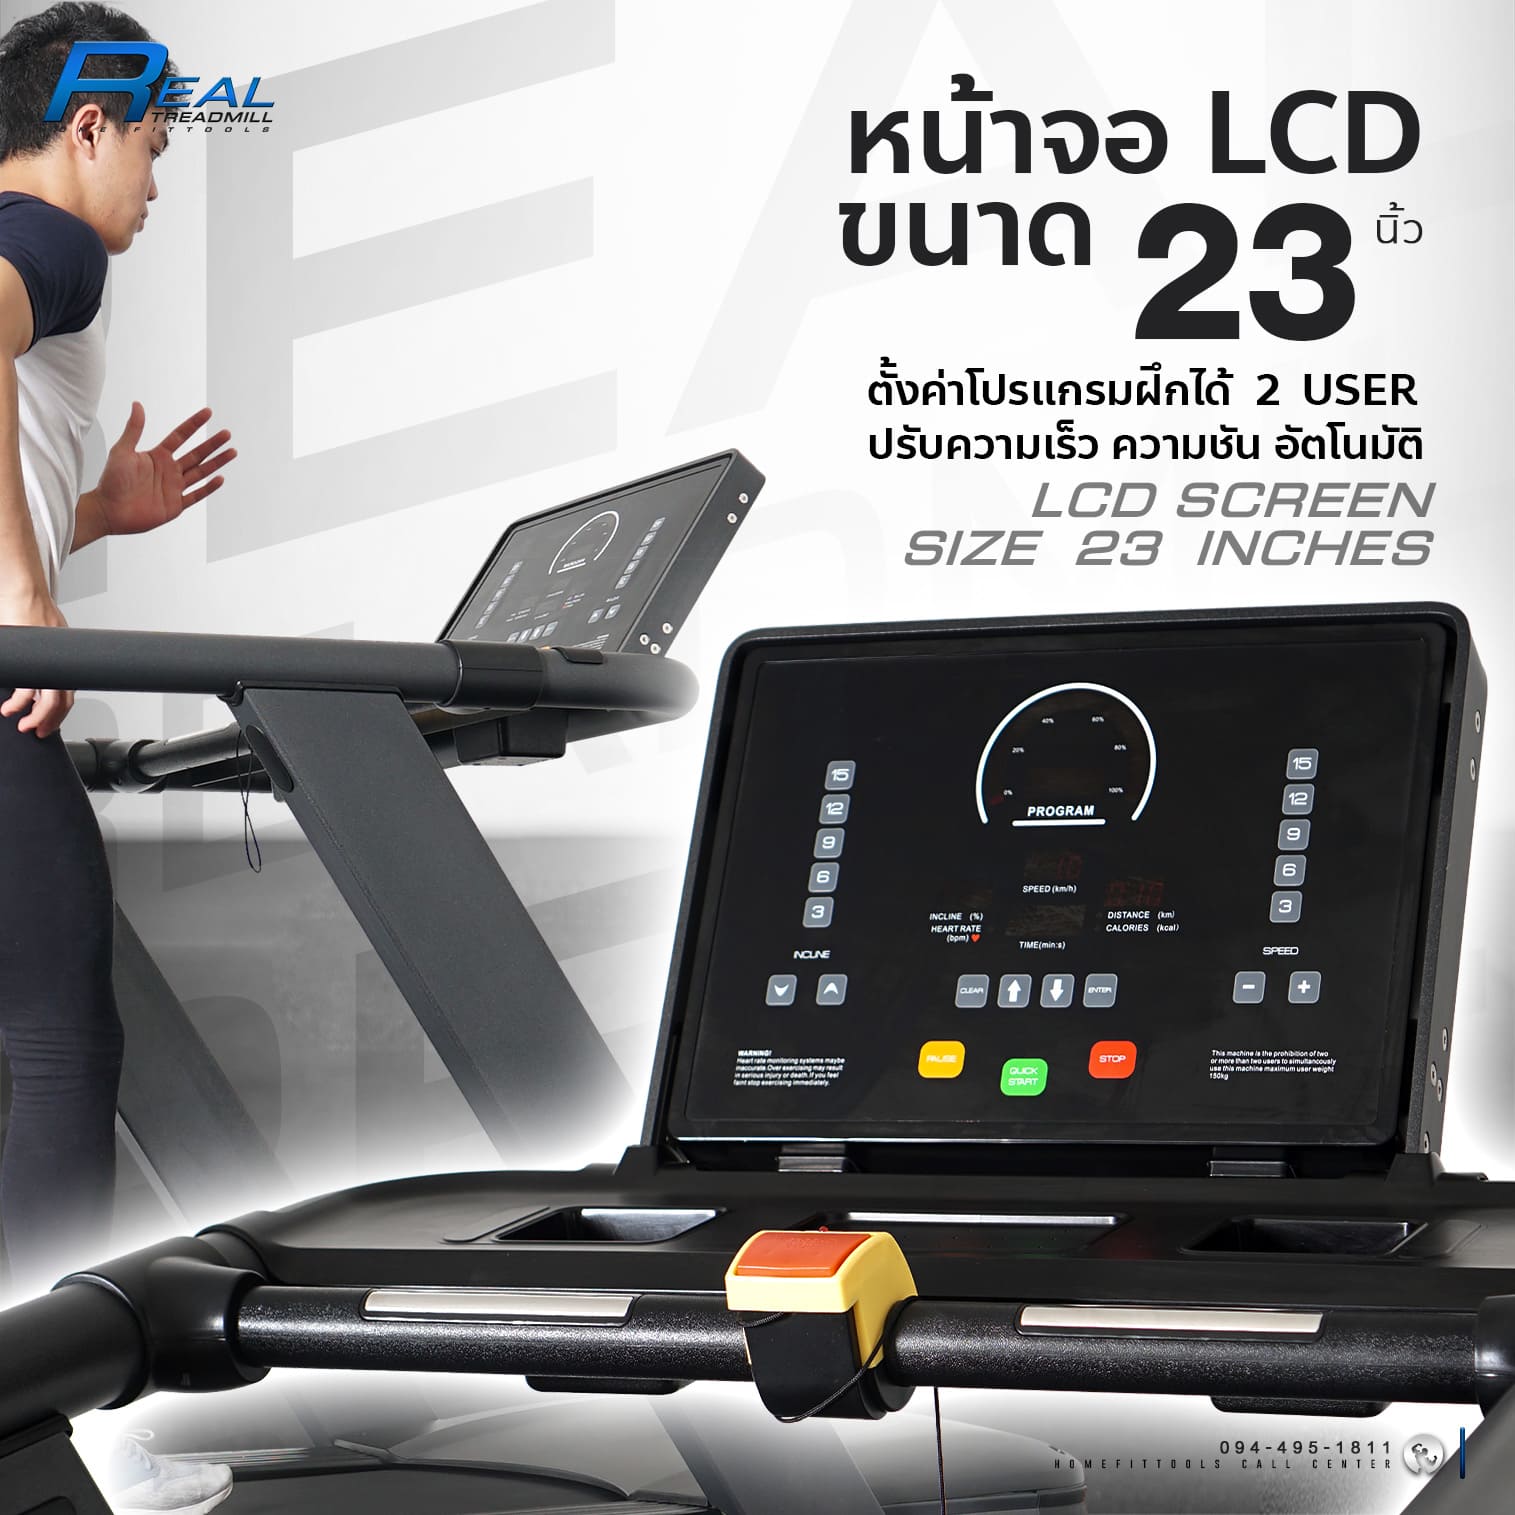 หน้าจอ LCD ลู่วิ่ง Treadmill รุ่น Real เครื่องออกกำลังกาย ลู่วิ่งออกกำลังกาย ลู่วิ่งราคาถูก อุปกรณ์ฟิตเนส Homefittools